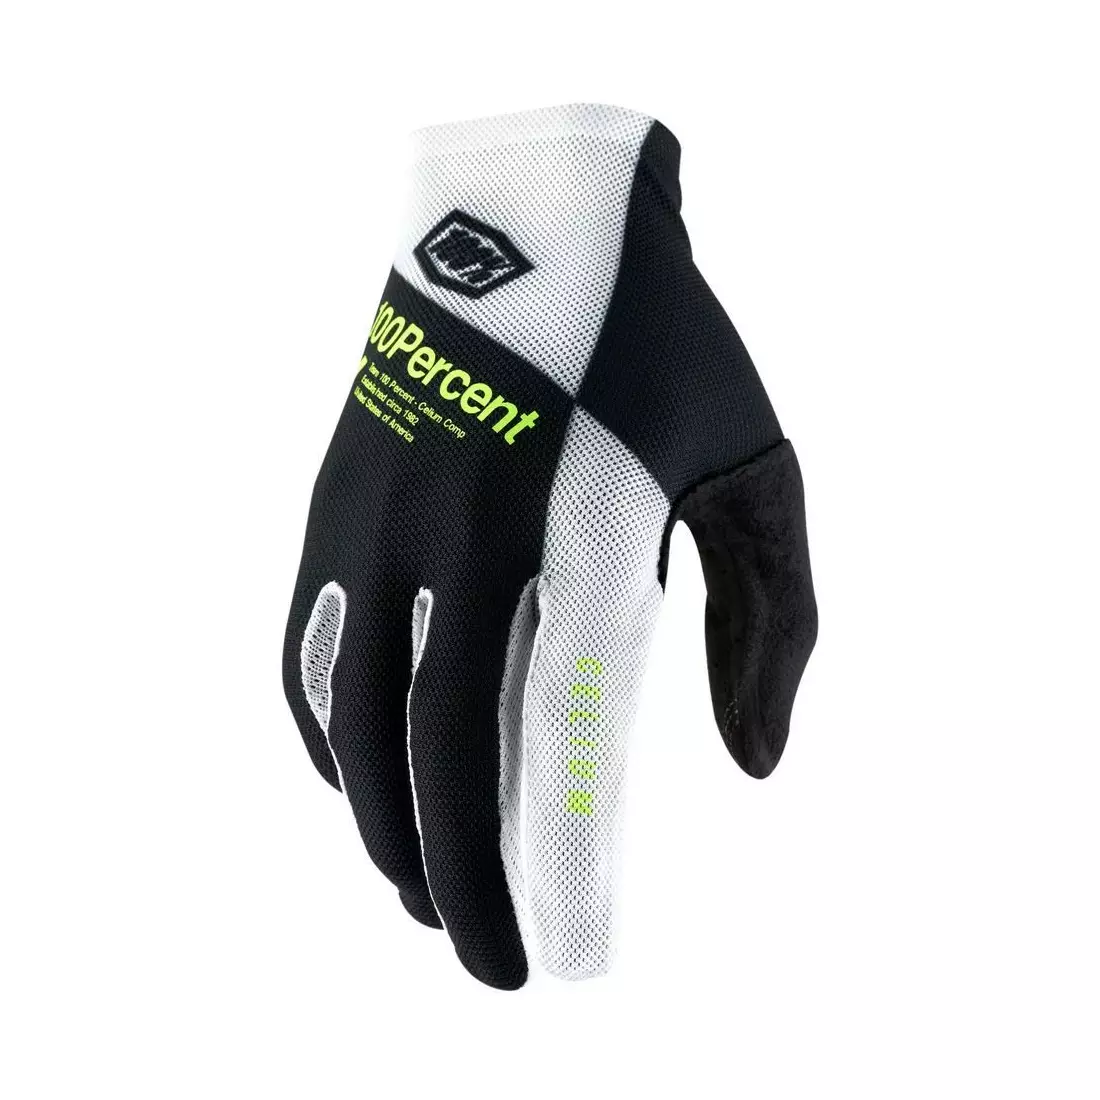 100% men's cycling gloves CELIUM black white fluo yellow STO-10005-442-12